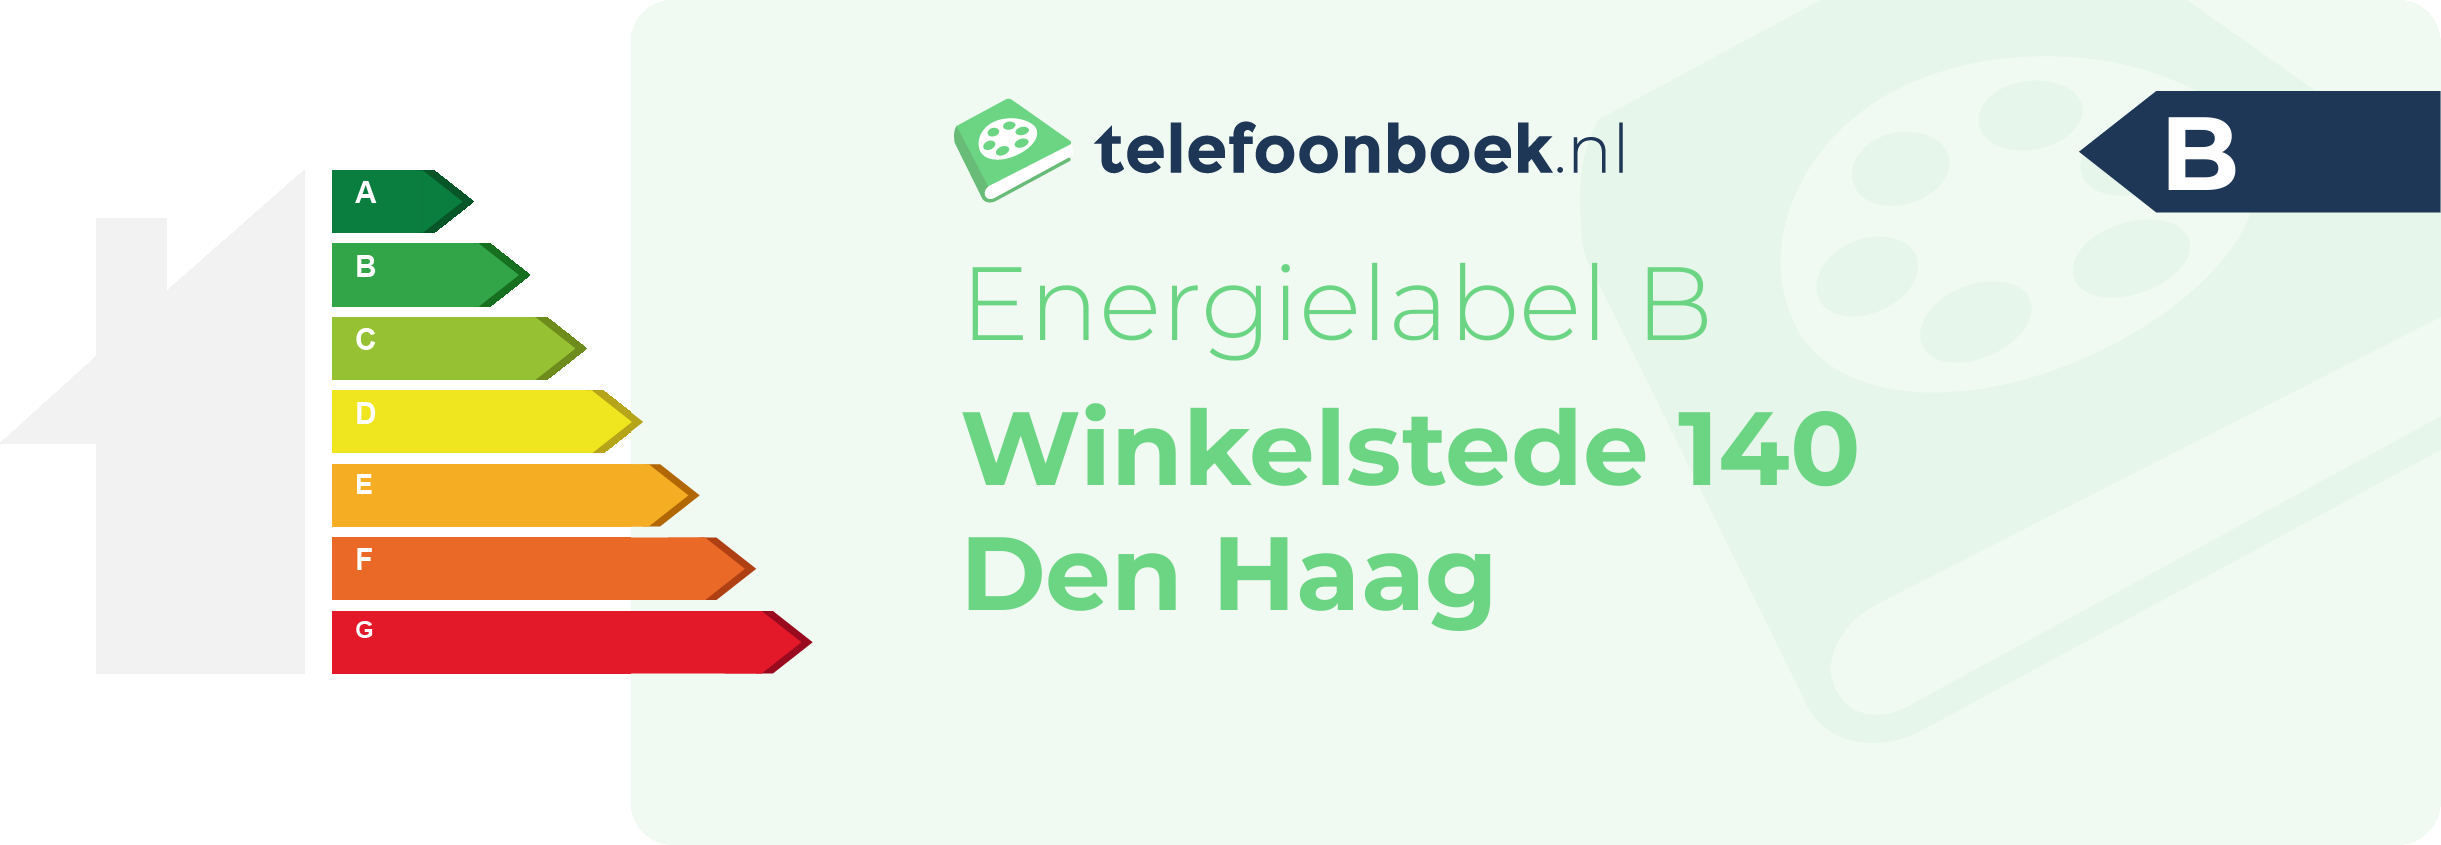 Energielabel Winkelstede 140 Den Haag